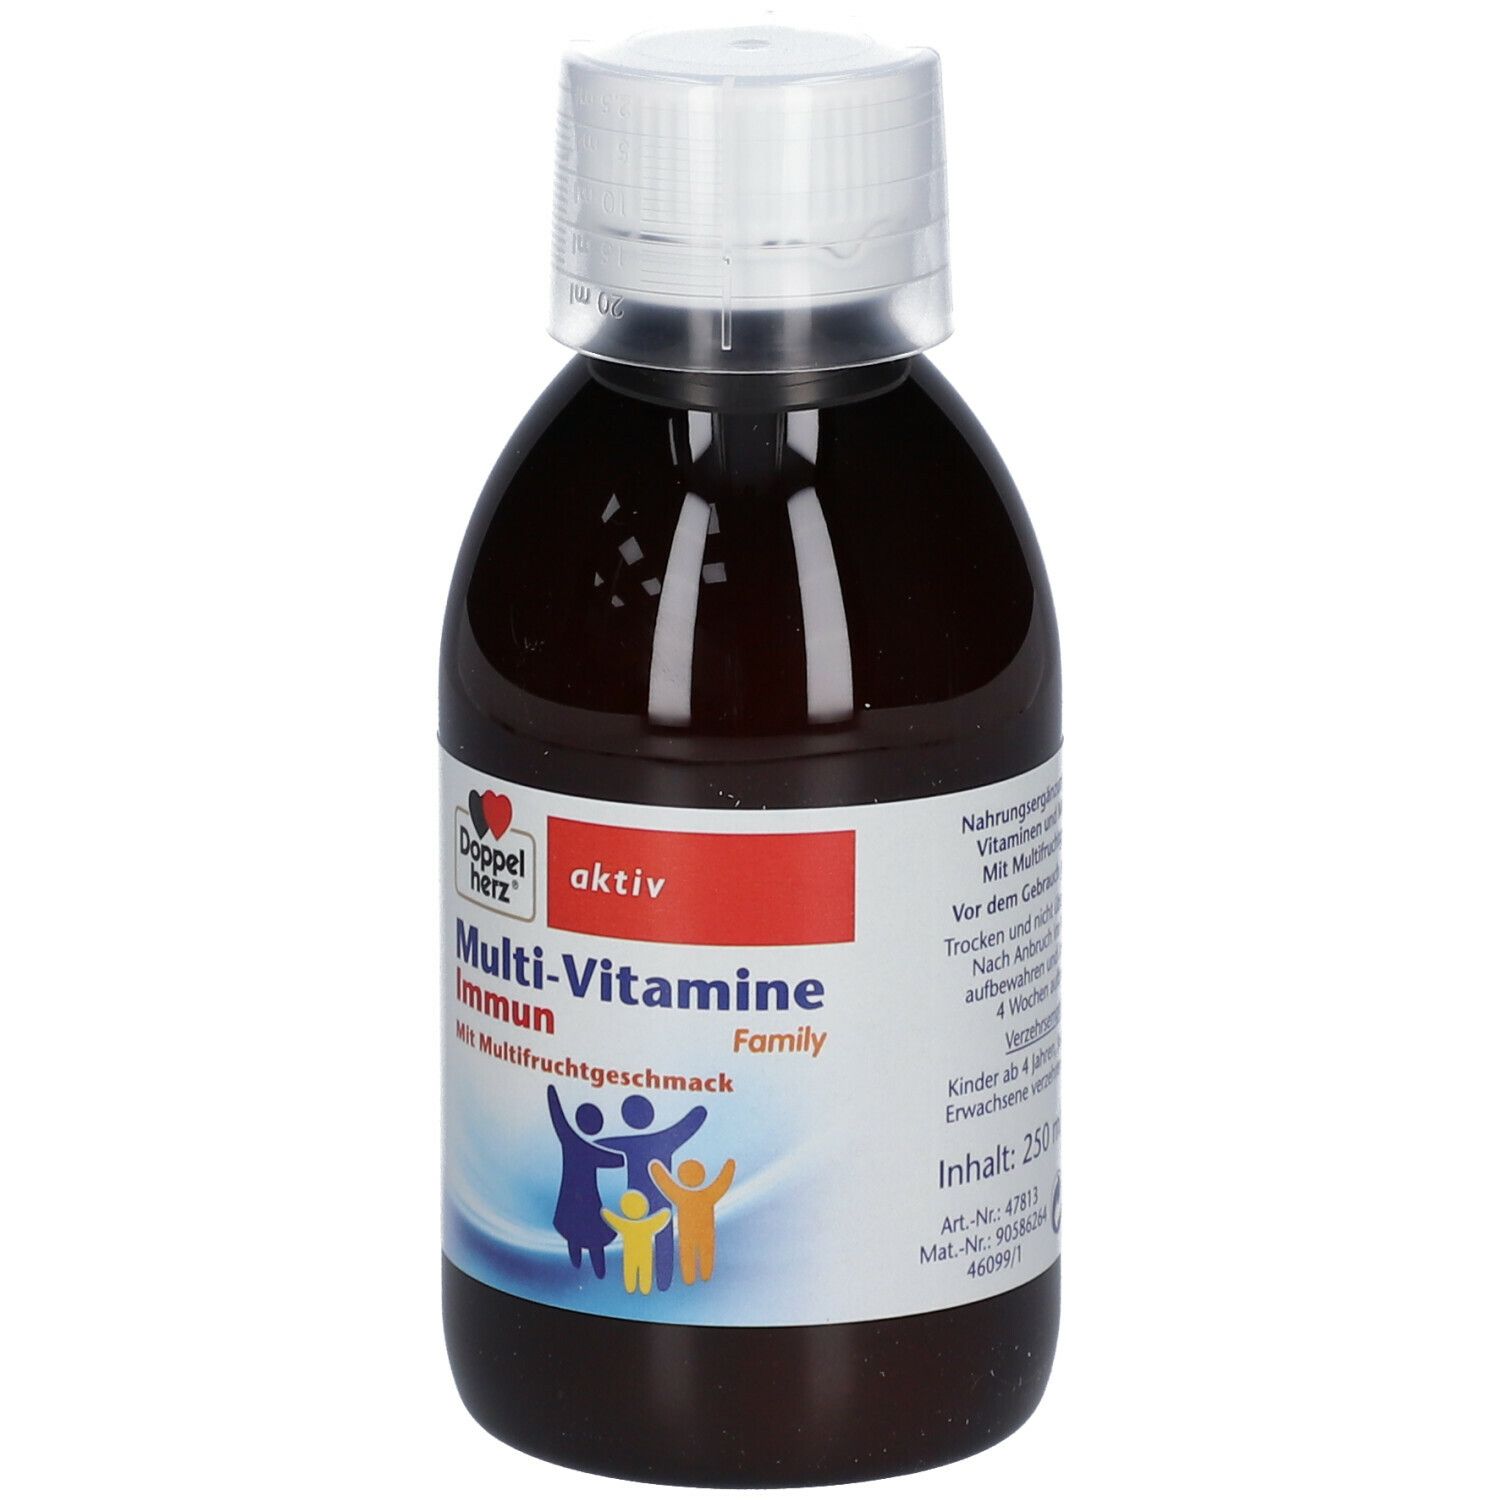 Doppelherz® aktiv Multi-Vitamine Immun